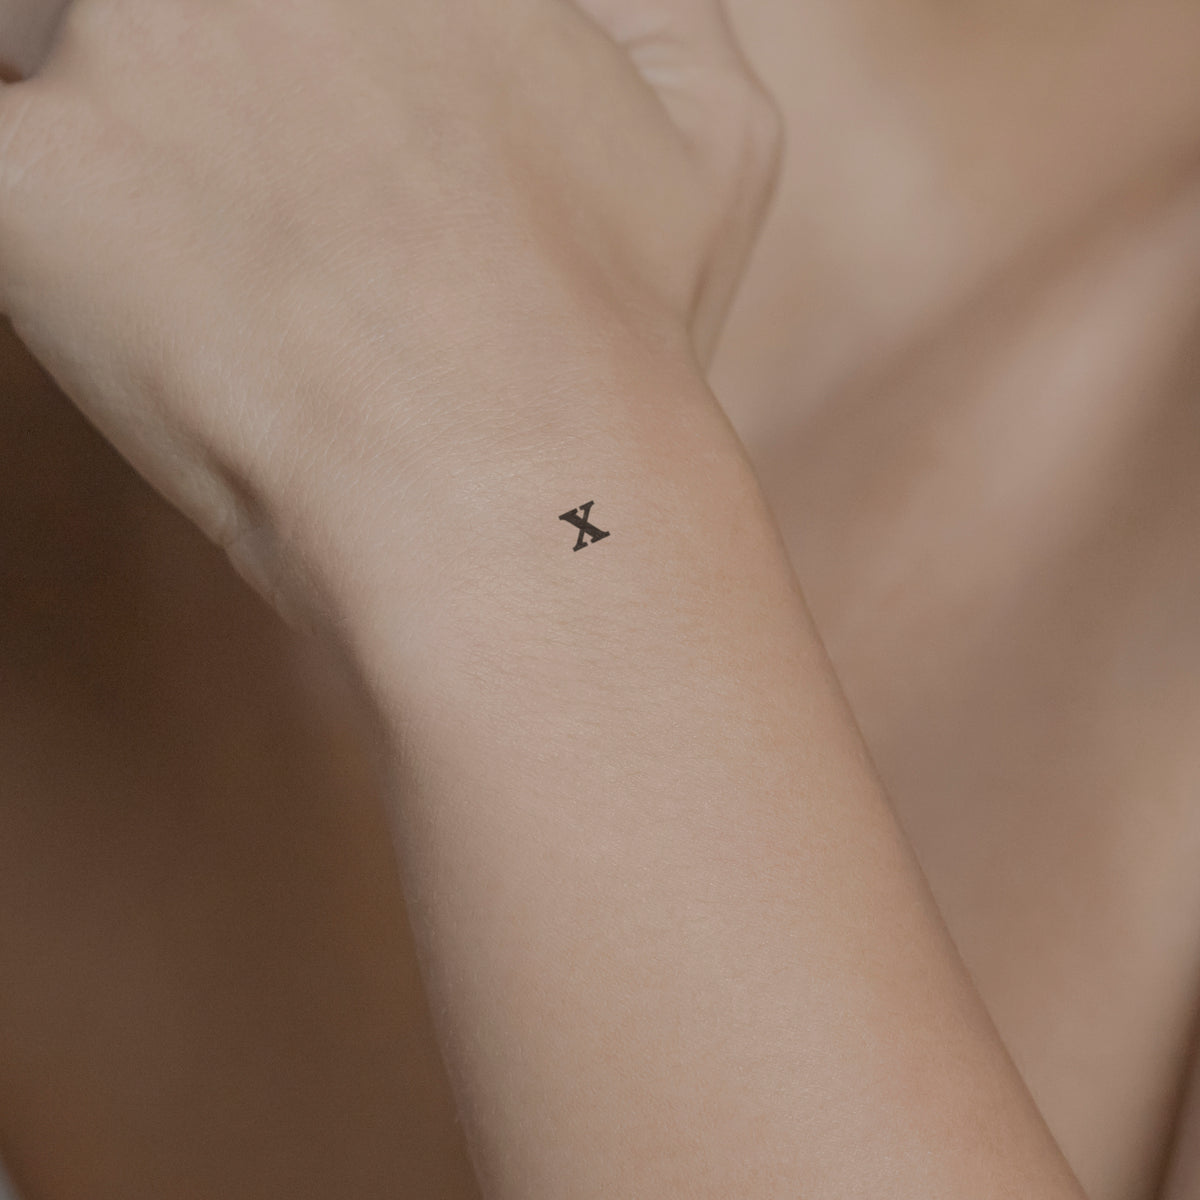 Schriftzug Tattoo Kleinbuchstabe: x von minink, der Marke für temporäre Tattoos.